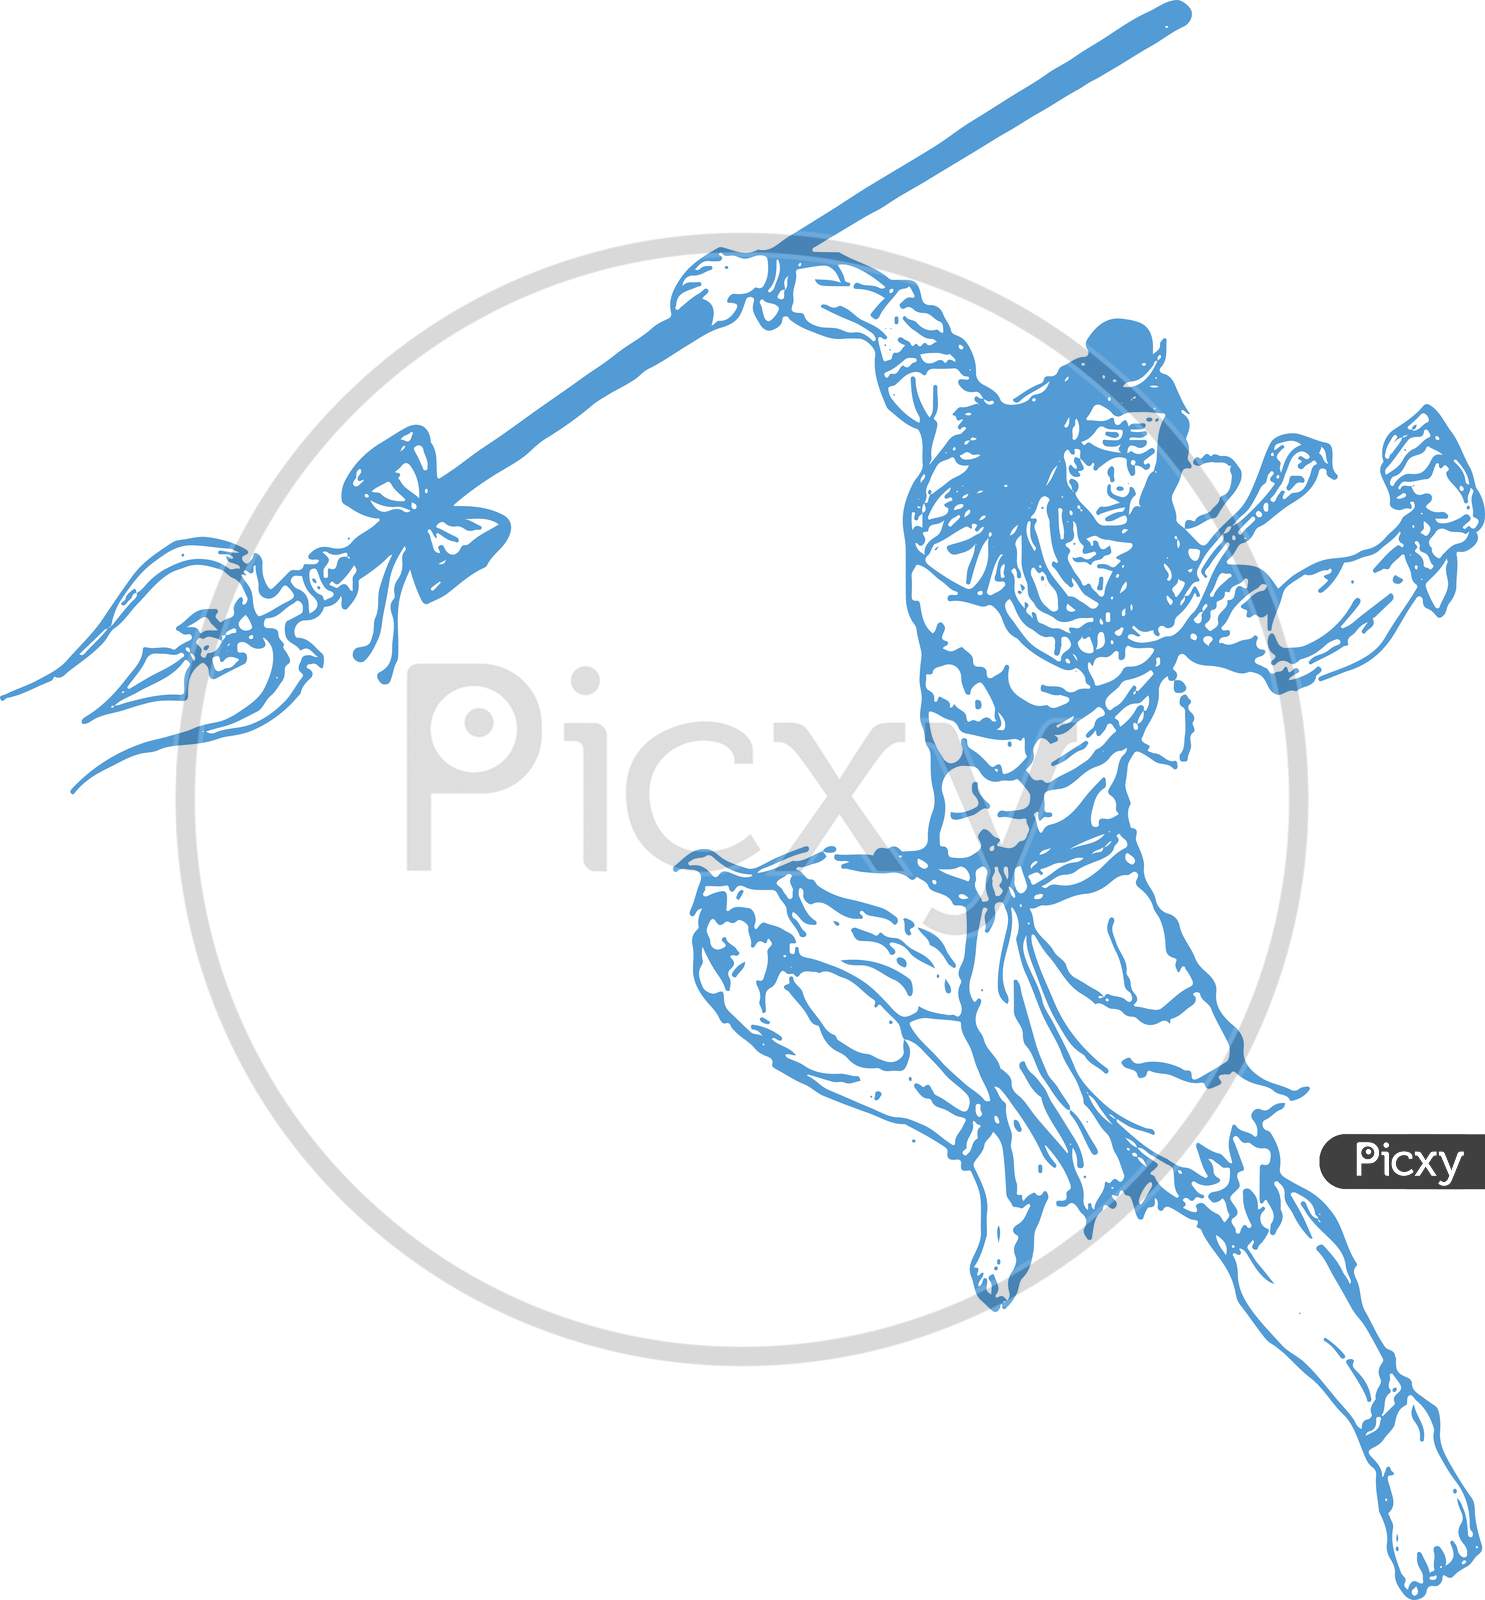 Lord Shiva - Subh Nag Panchami - Mahashivaratri Poster, Hand Drawn Sketch  Vector Illustration. Royalty Free SVG, Cliparts, Vectors, and Stock  Illustration. Image 82897477.